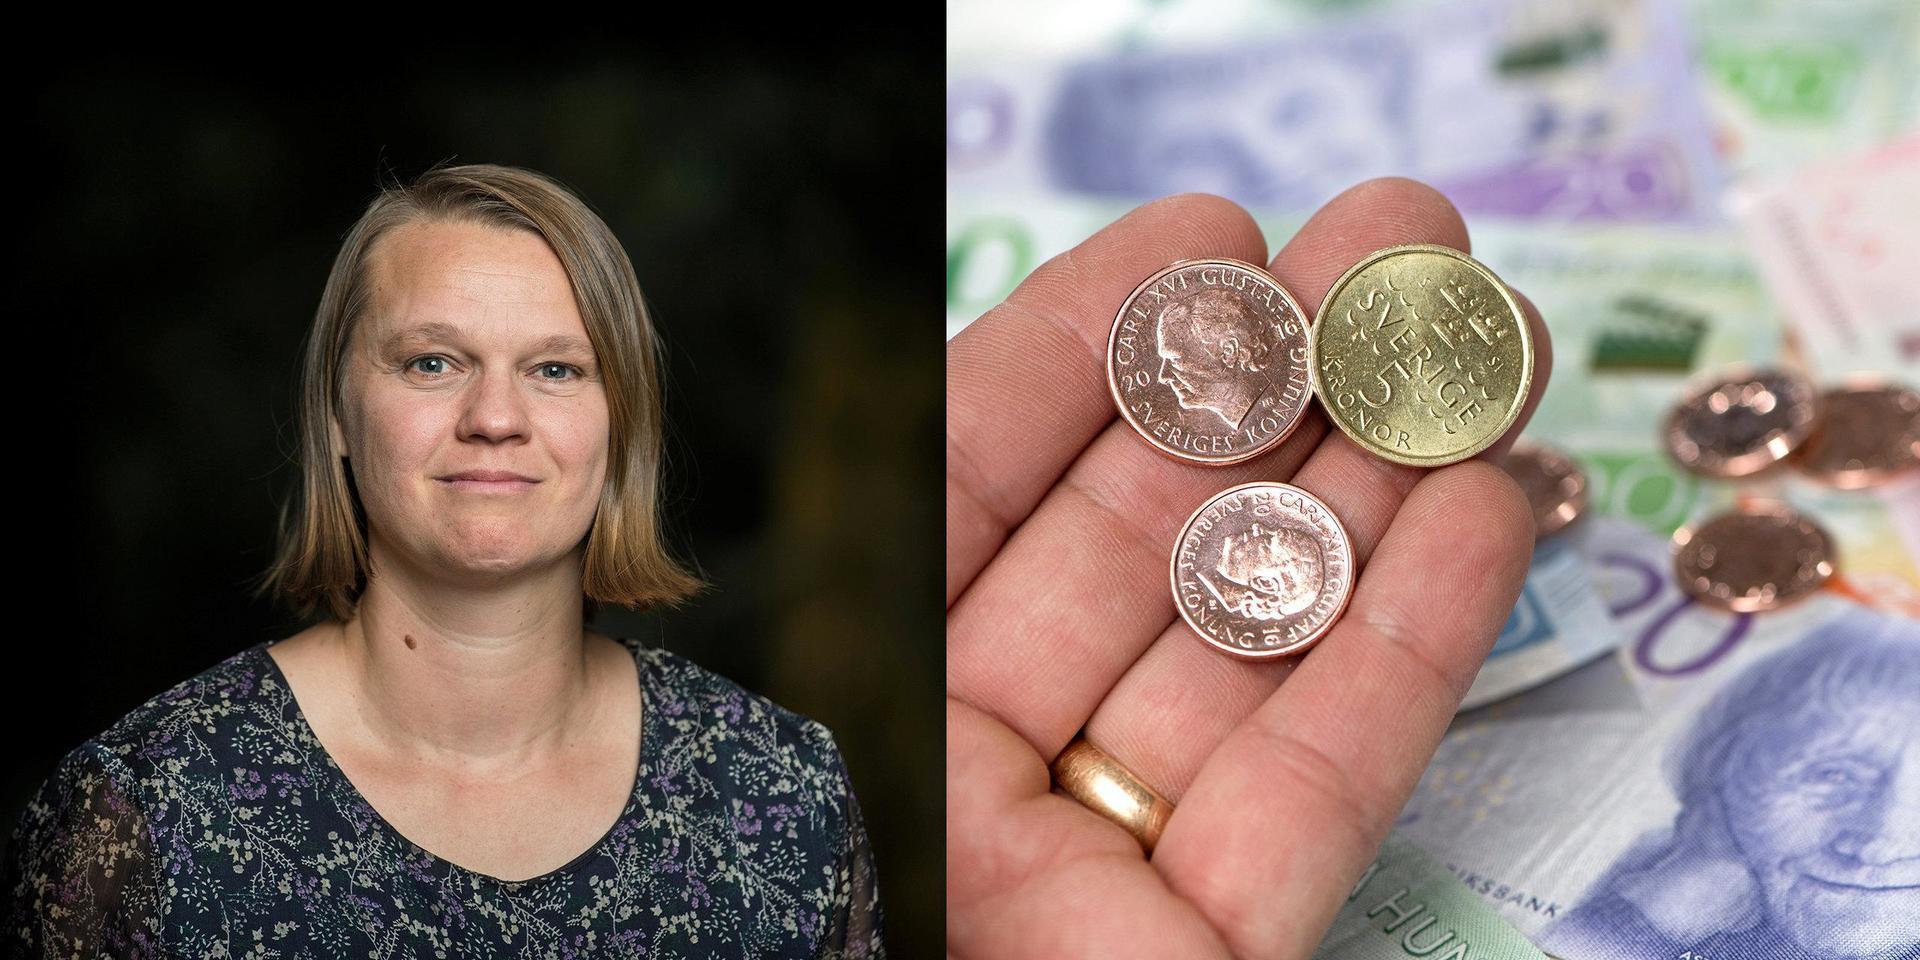 Vänsterpartiets Tania Bengtsson öppnar för att höja skatten under kommande år. ”Vi ser hellre en skattehöjning än nedskärningar i välfärden”, säger hon.